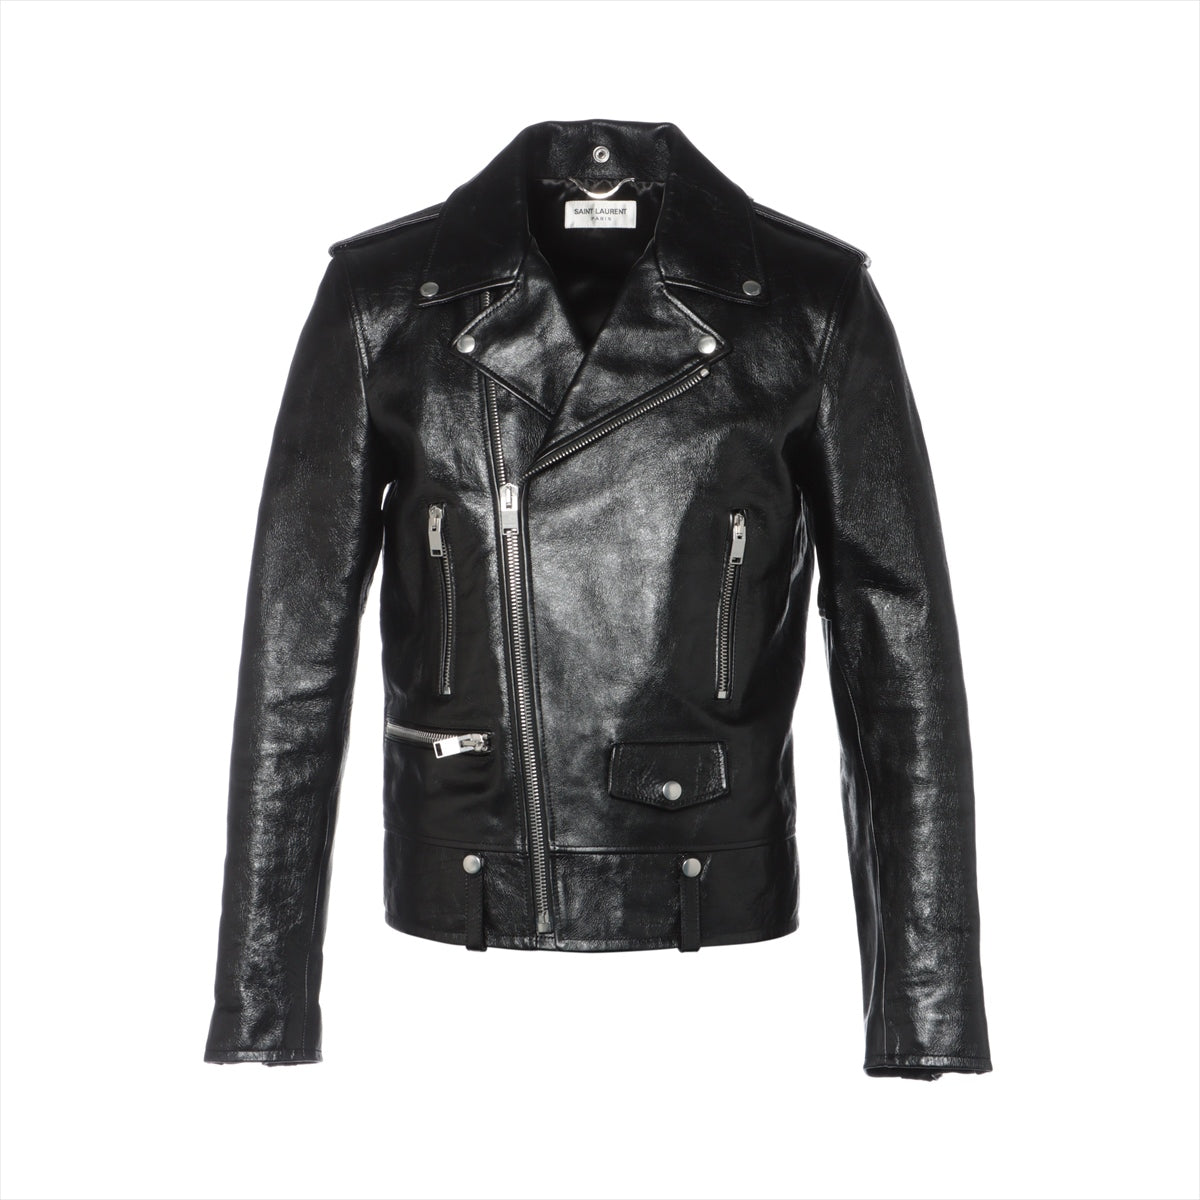 Saint Laurent Paris classic motorcycles Leather Leather jacket 48 Men's Black  484284